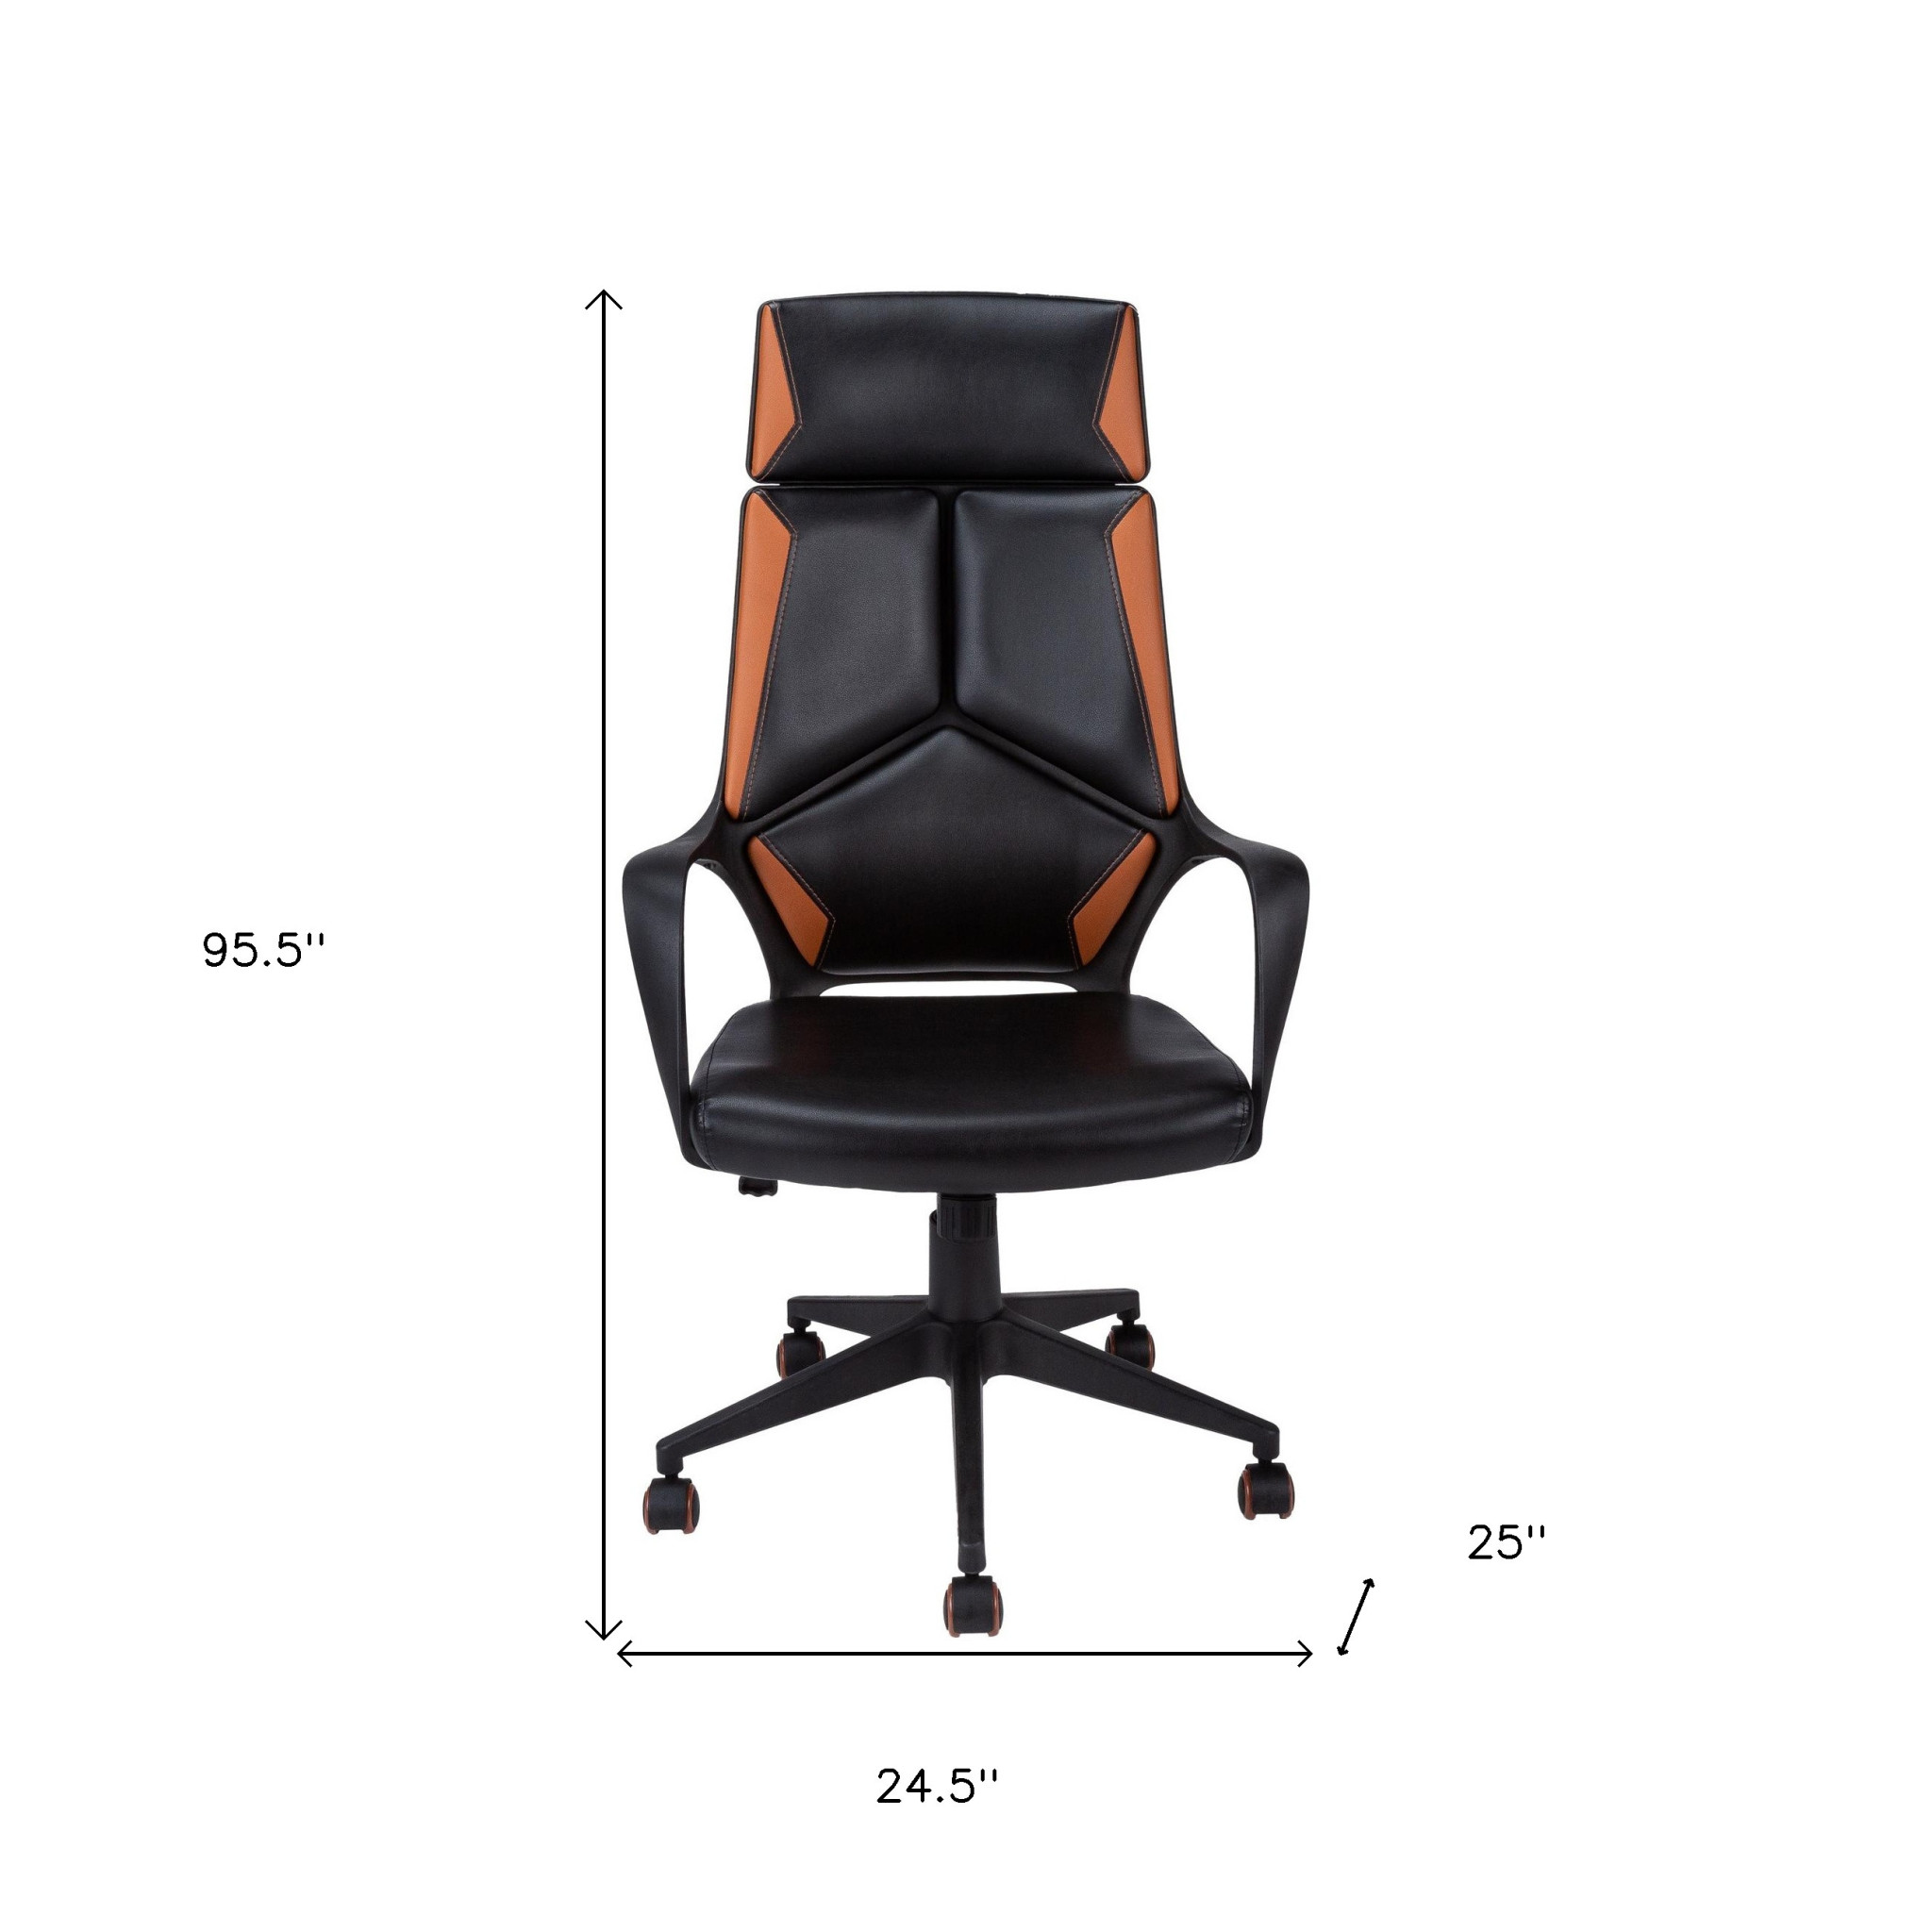 24.5" x 25" x 95.5" Black Brown Foam MetalLeather Look Office Chair